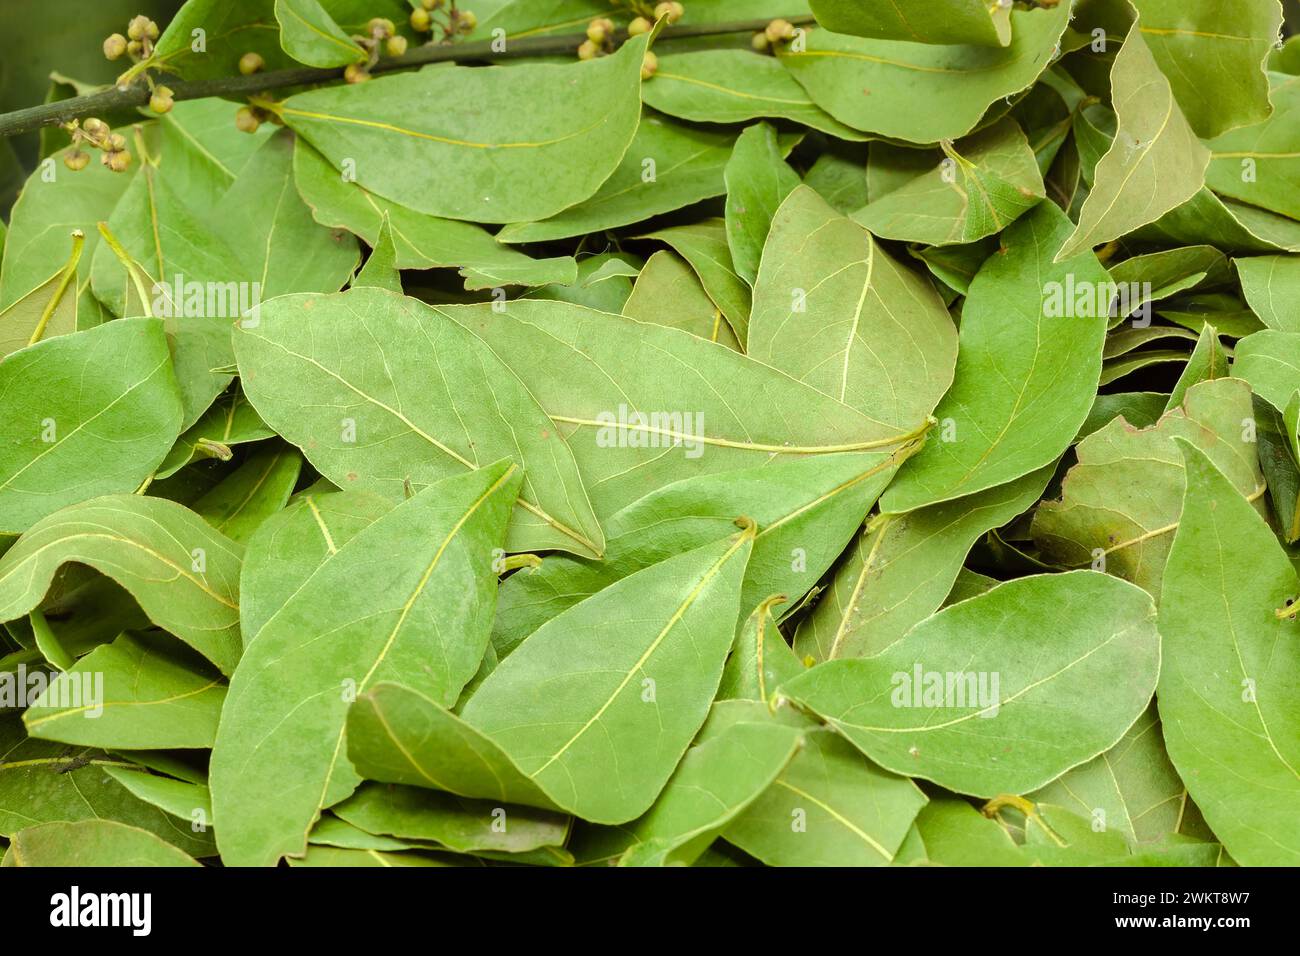 (Valeurs multiples)feuilles de laurier semi-séchées pour l'assaisonnement utilisées en cuisine. Mise au point sélective avec faible profondeur de champ. Banque D'Images